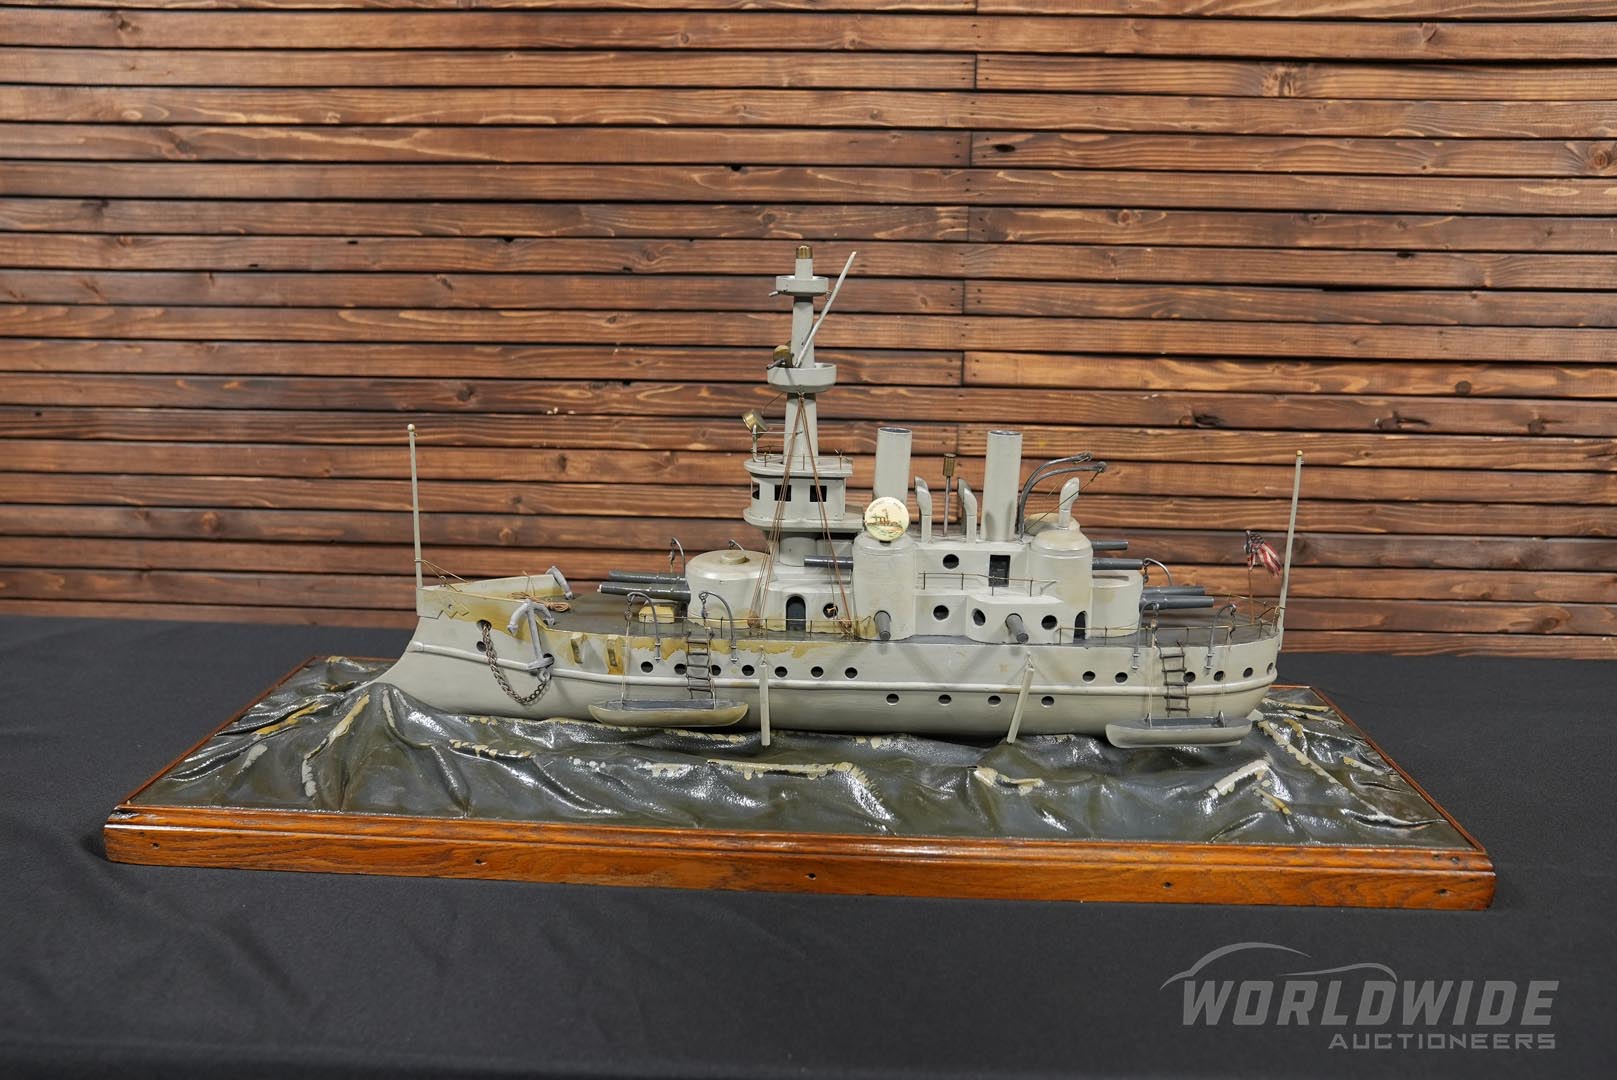  USS Maine Folk Art Wooden Repl ica 